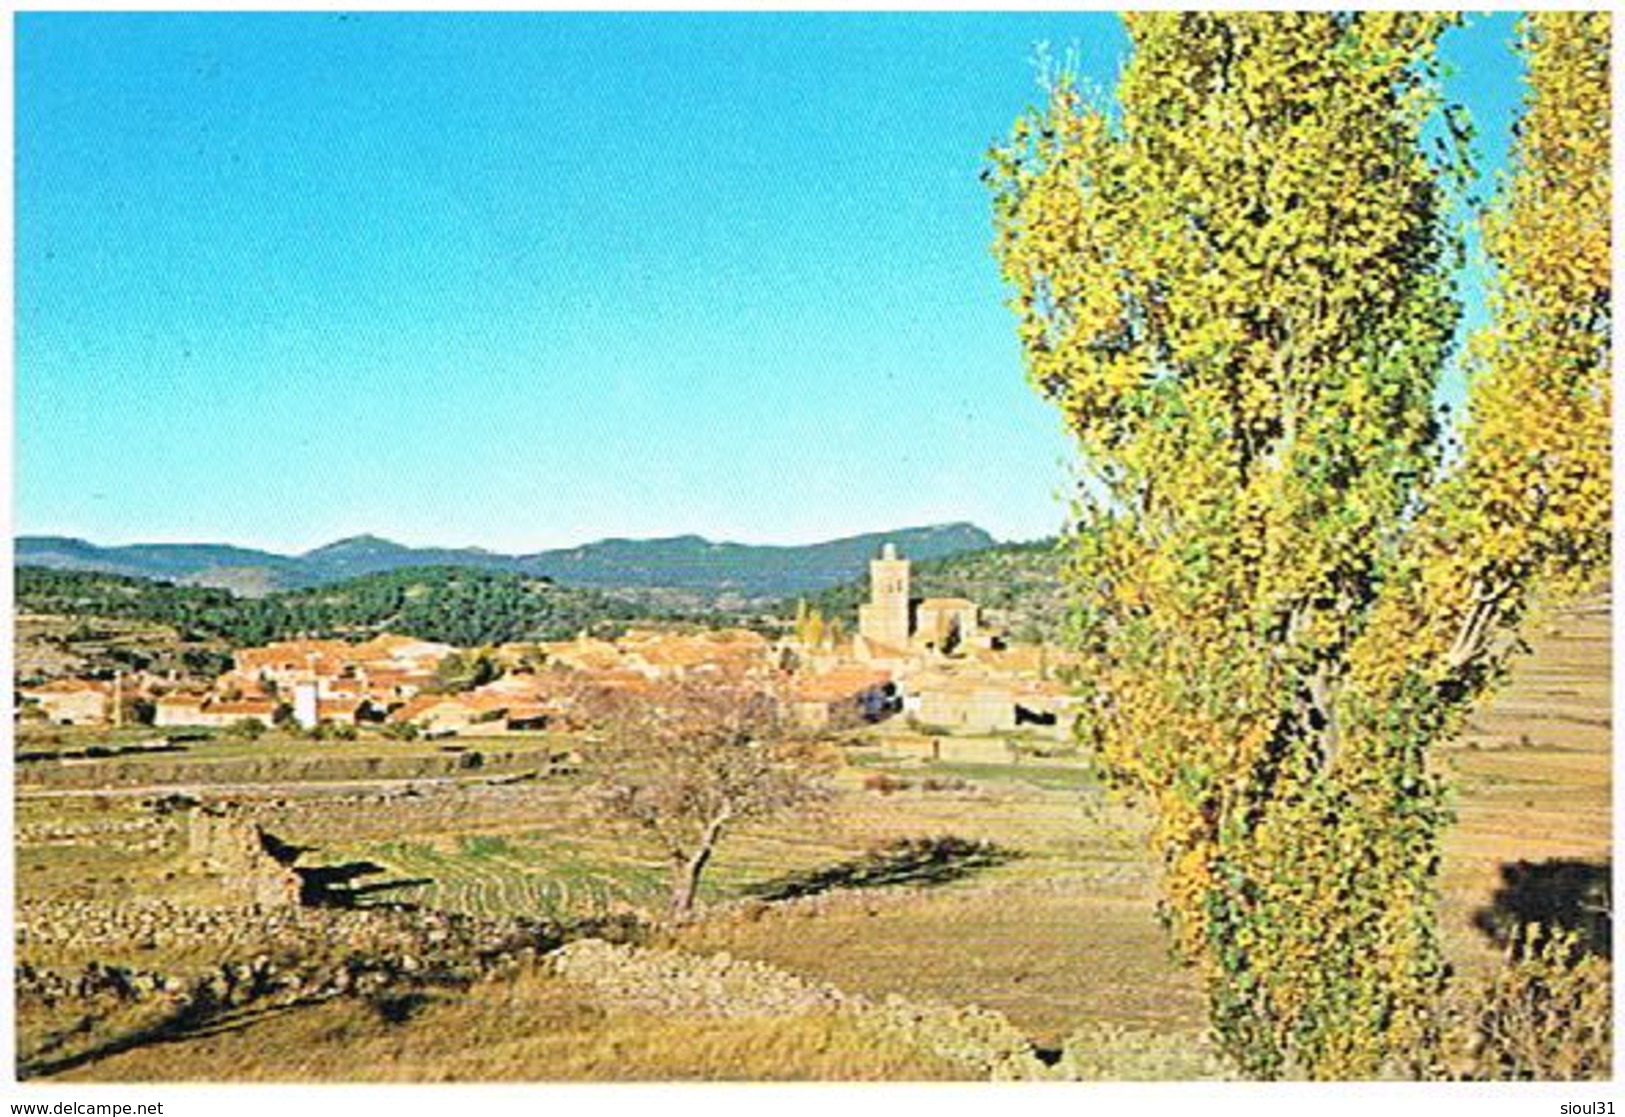 JABALOYAS  TERUEL    VISTA PANORAMICA  TBE  ES536 - Teruel